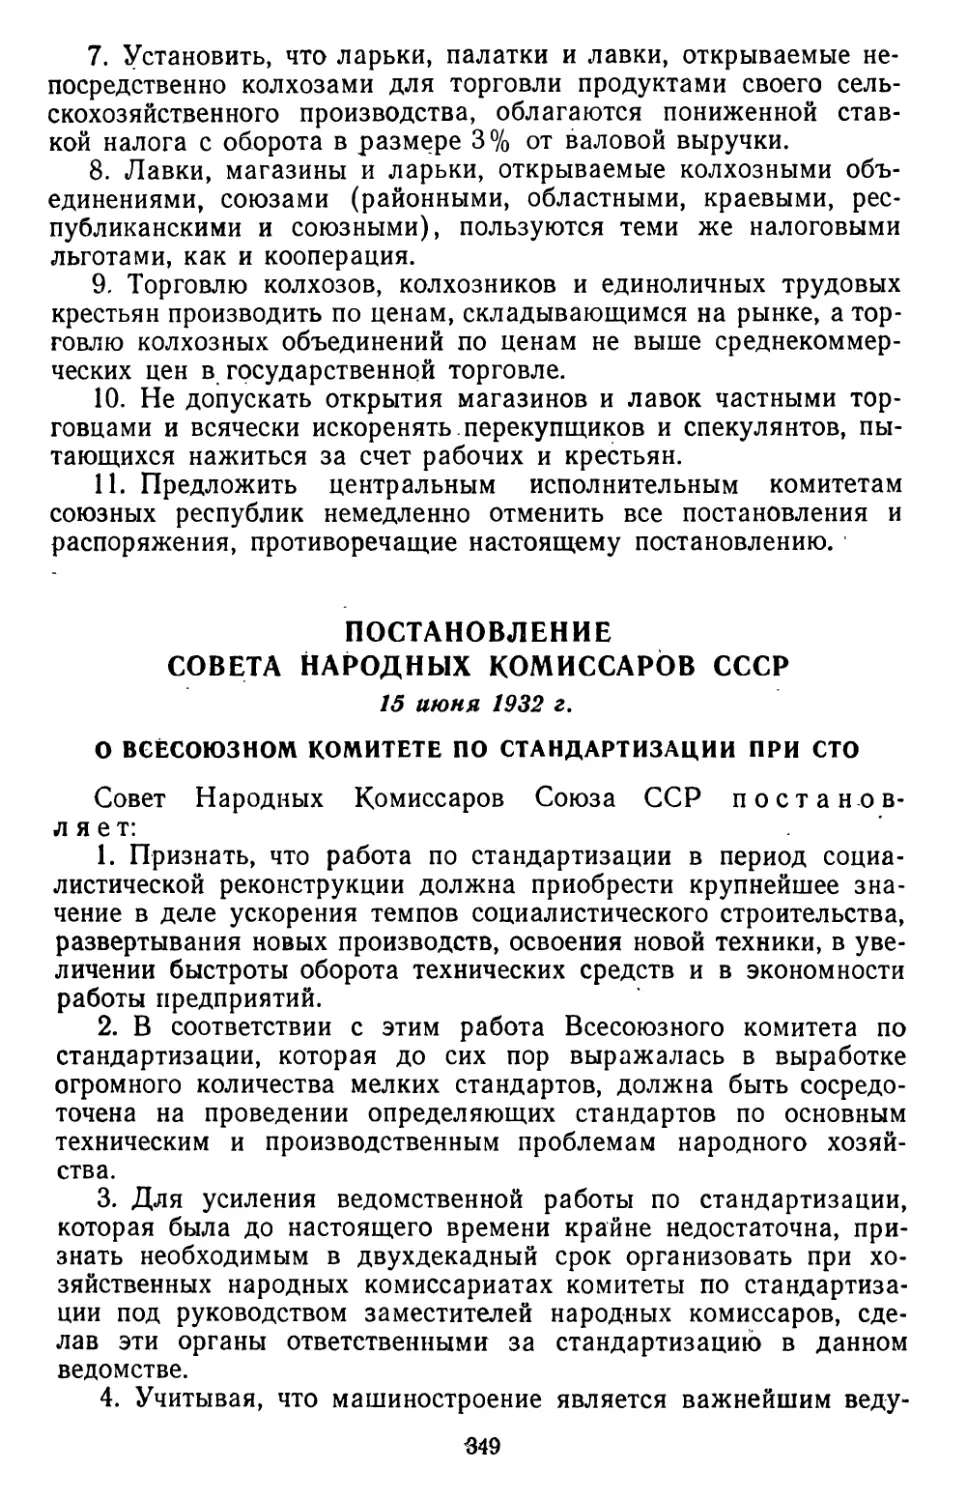 Постановление Совета Народных Комиссаров СССР, 15 июня 1932 г. О Всесоюзном комитете по стандартизации при СТО